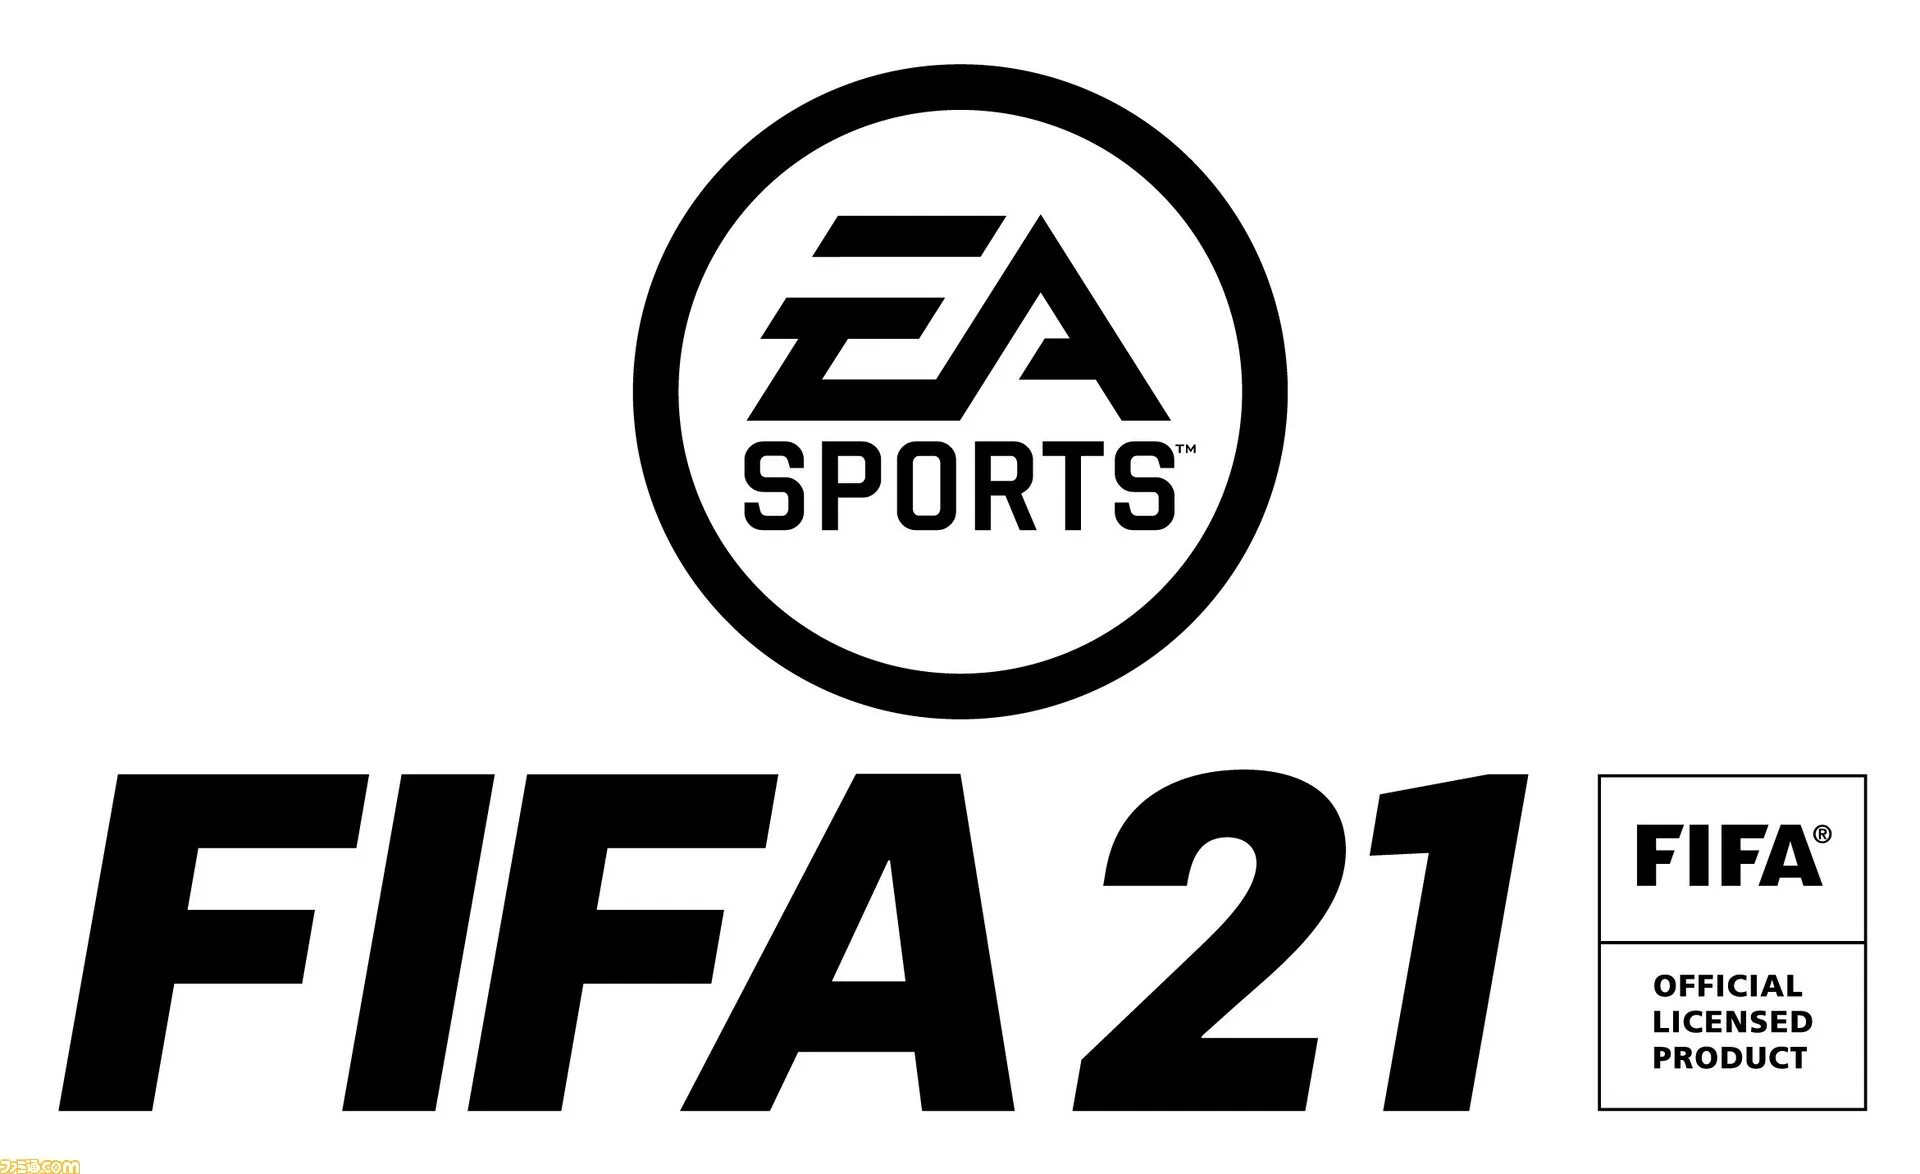 FIFA 2021 игра. ФИФА логотип. Логотип FIFA 22. Логотип EA Sports.